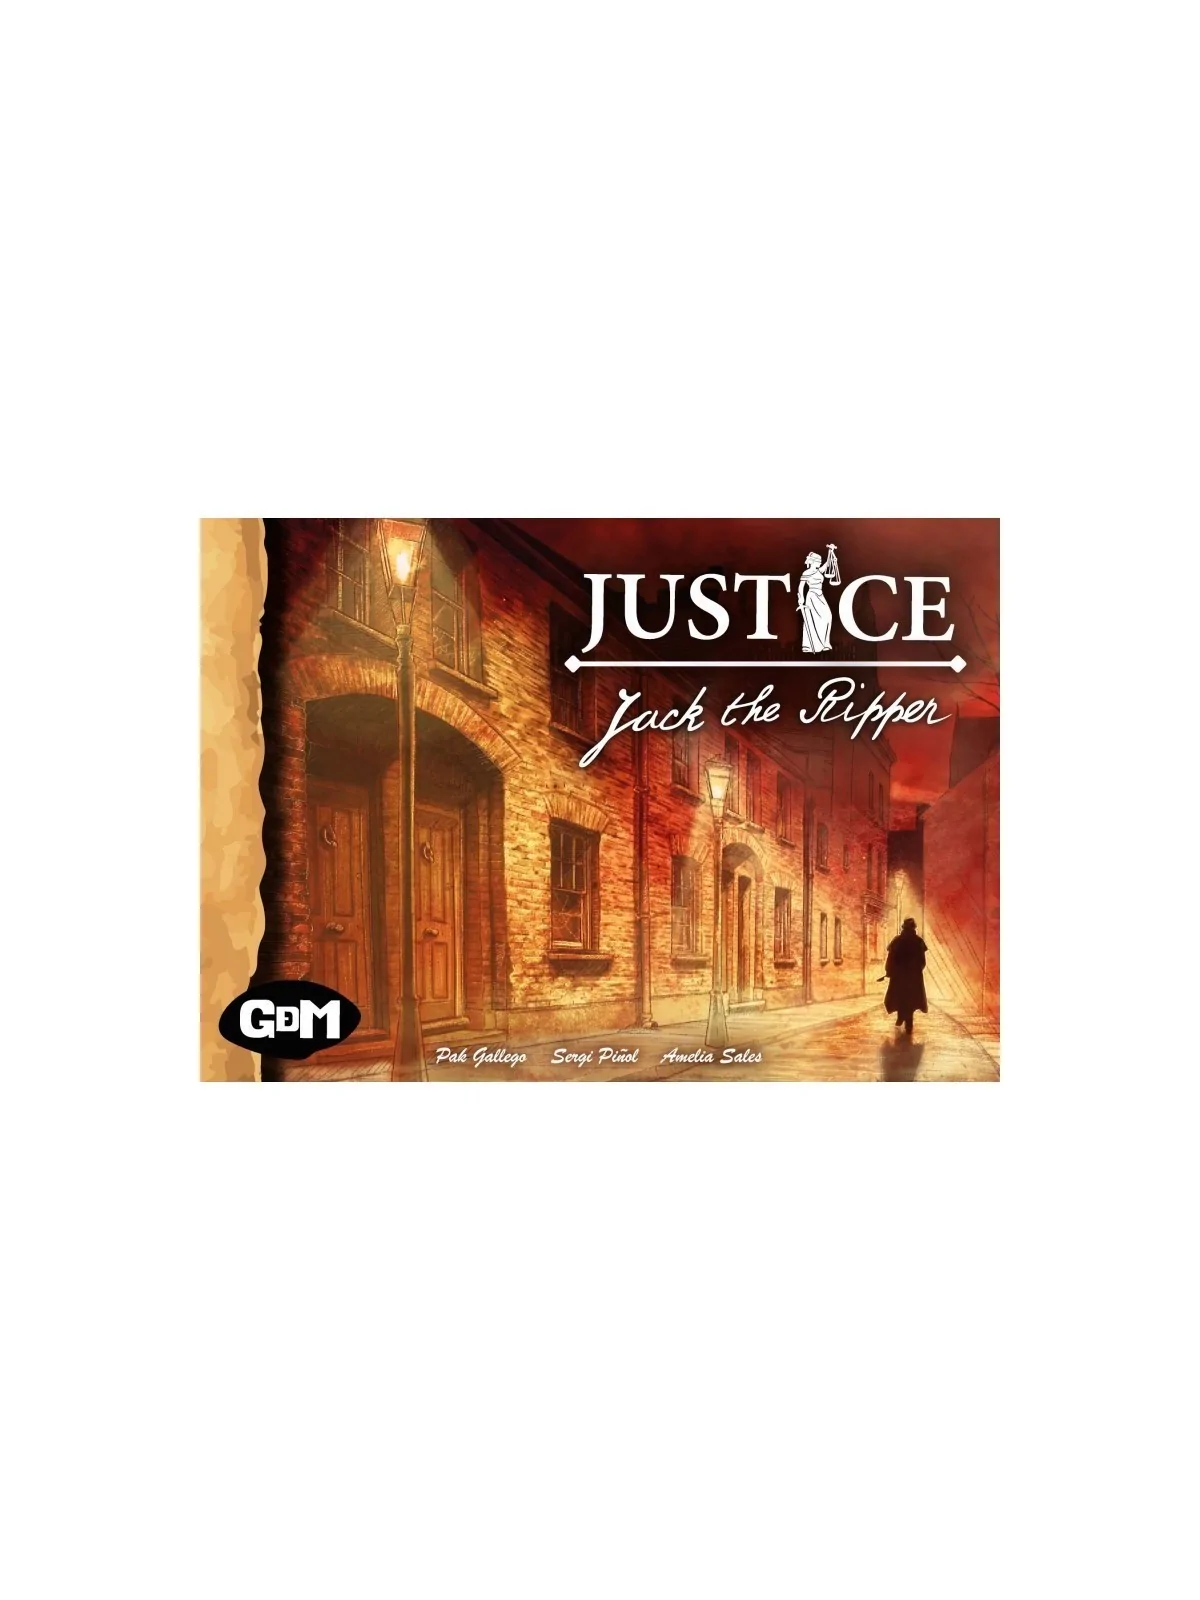 Comprar Justice: Jack The Ripper barato al mejor precio 9,00 € de GDM 